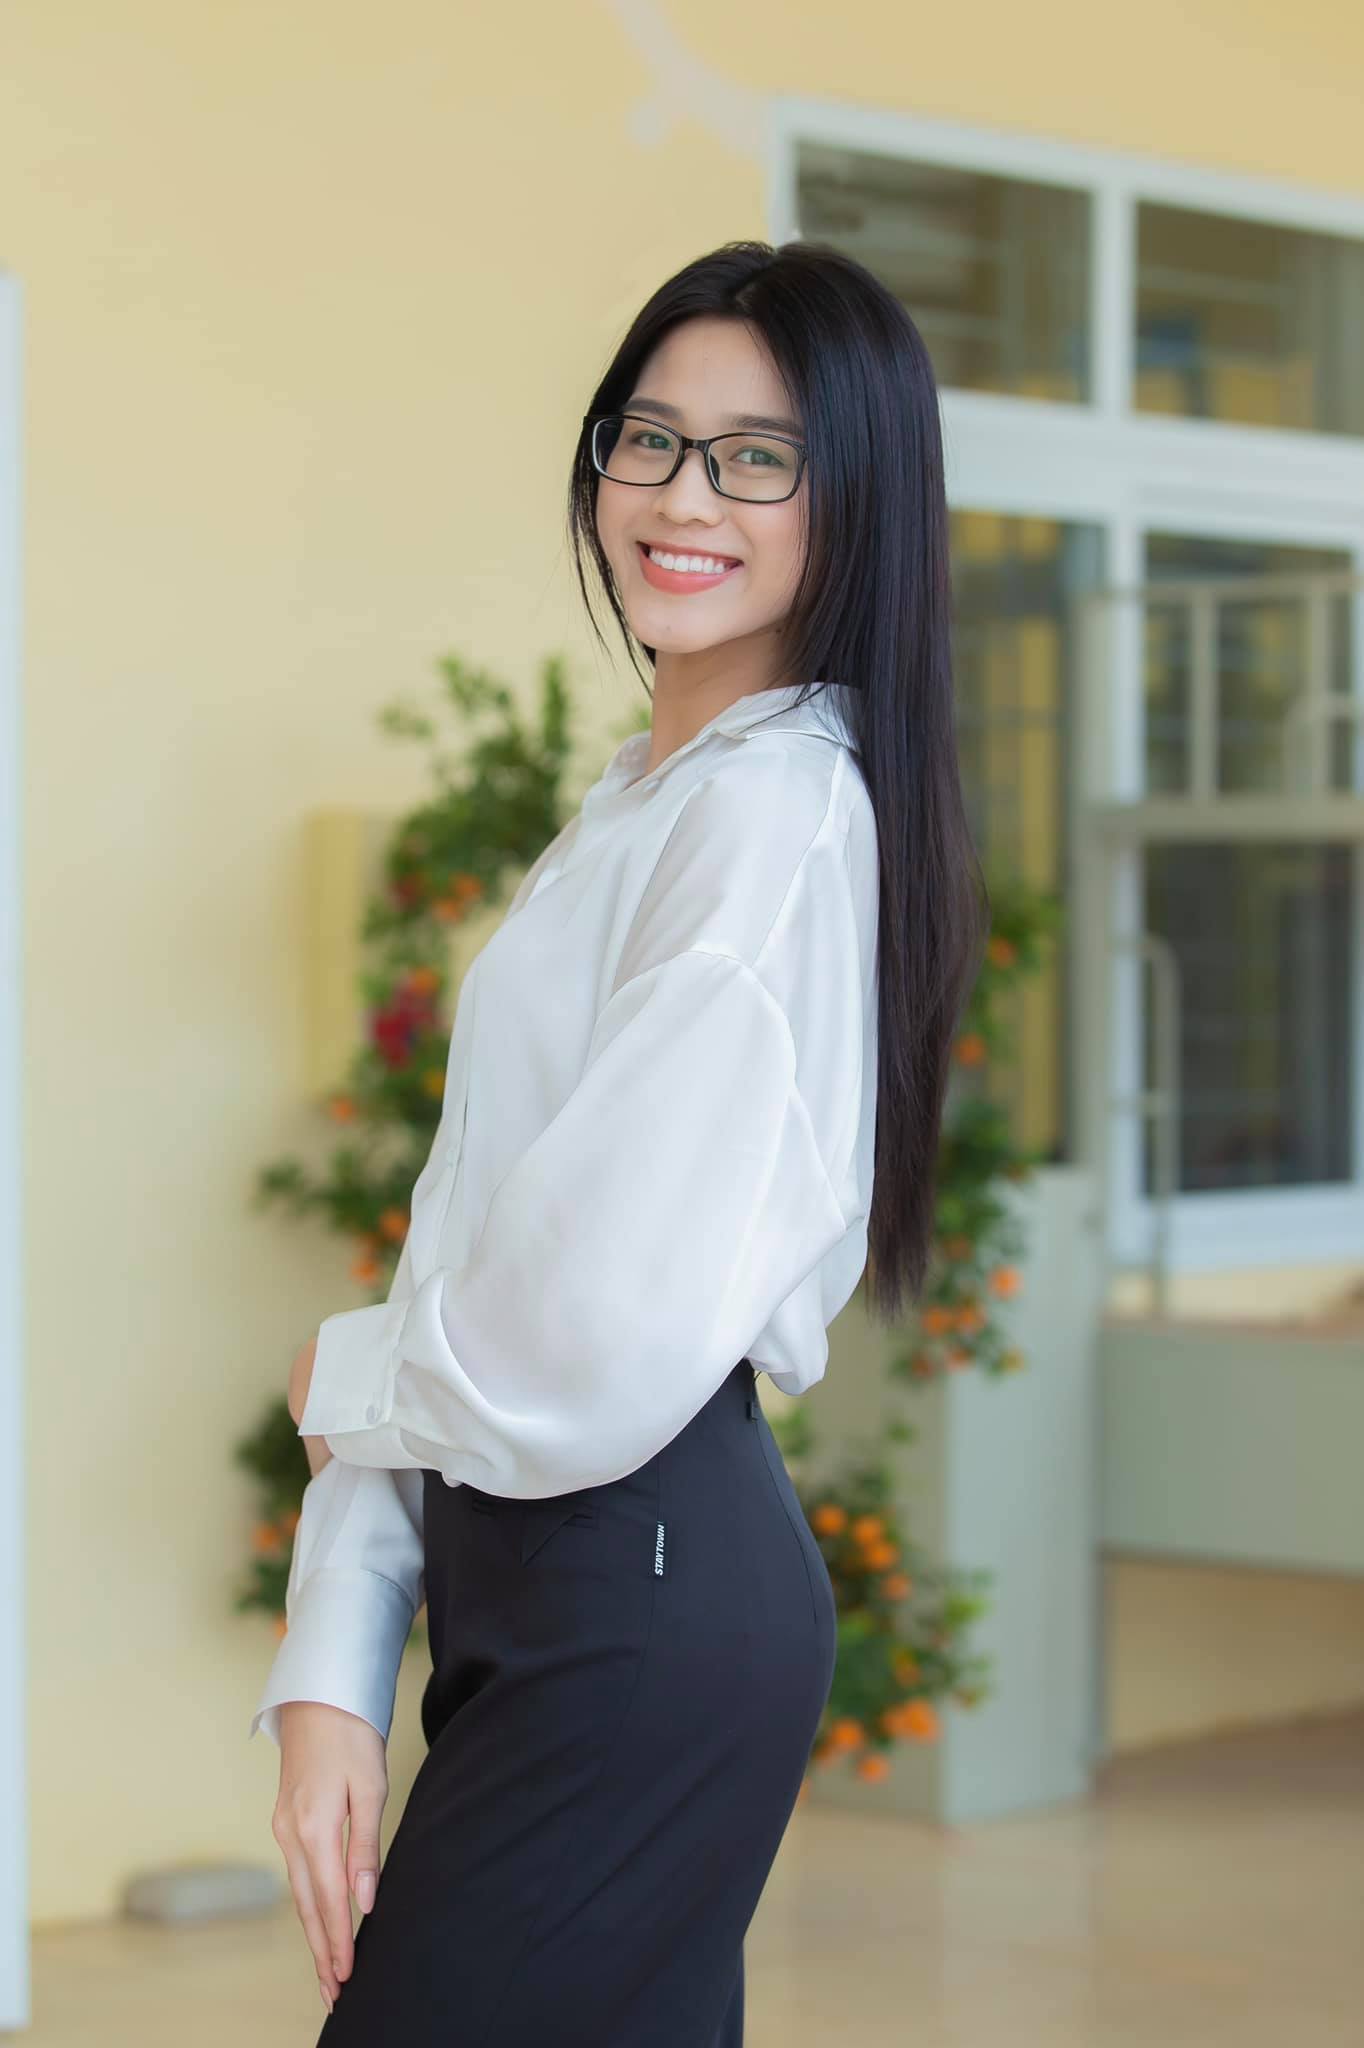 Áo phông/sơ mi trắng kèm quần jeans hay quần âu khi đi từ thiện là đồng phục của các Hoa hậu Việt Nam.